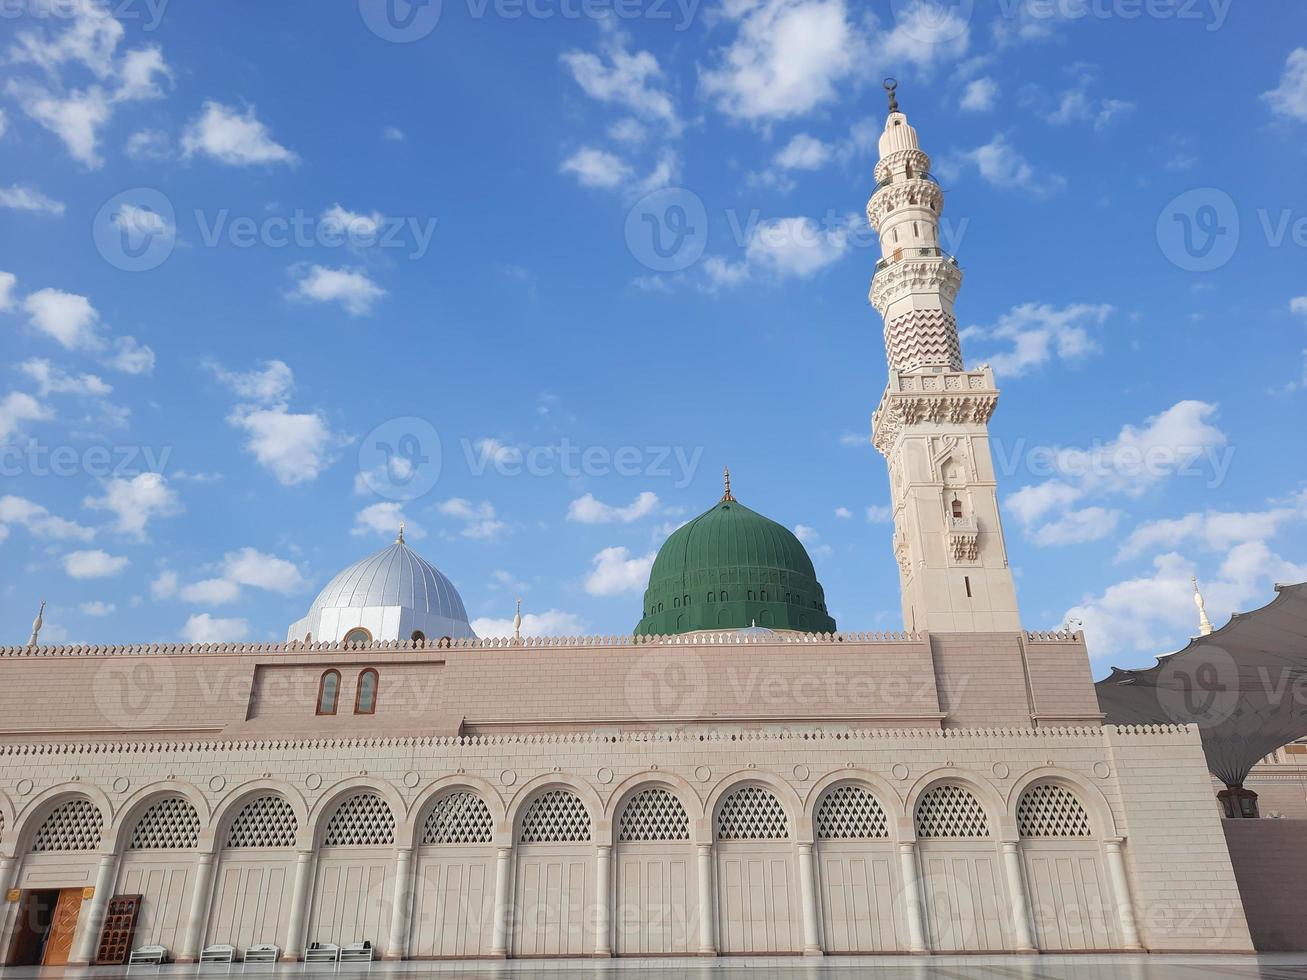 schöne tagesansicht der moschee des propheten - masjid al nabawi, medina, saudi-arabien. foto